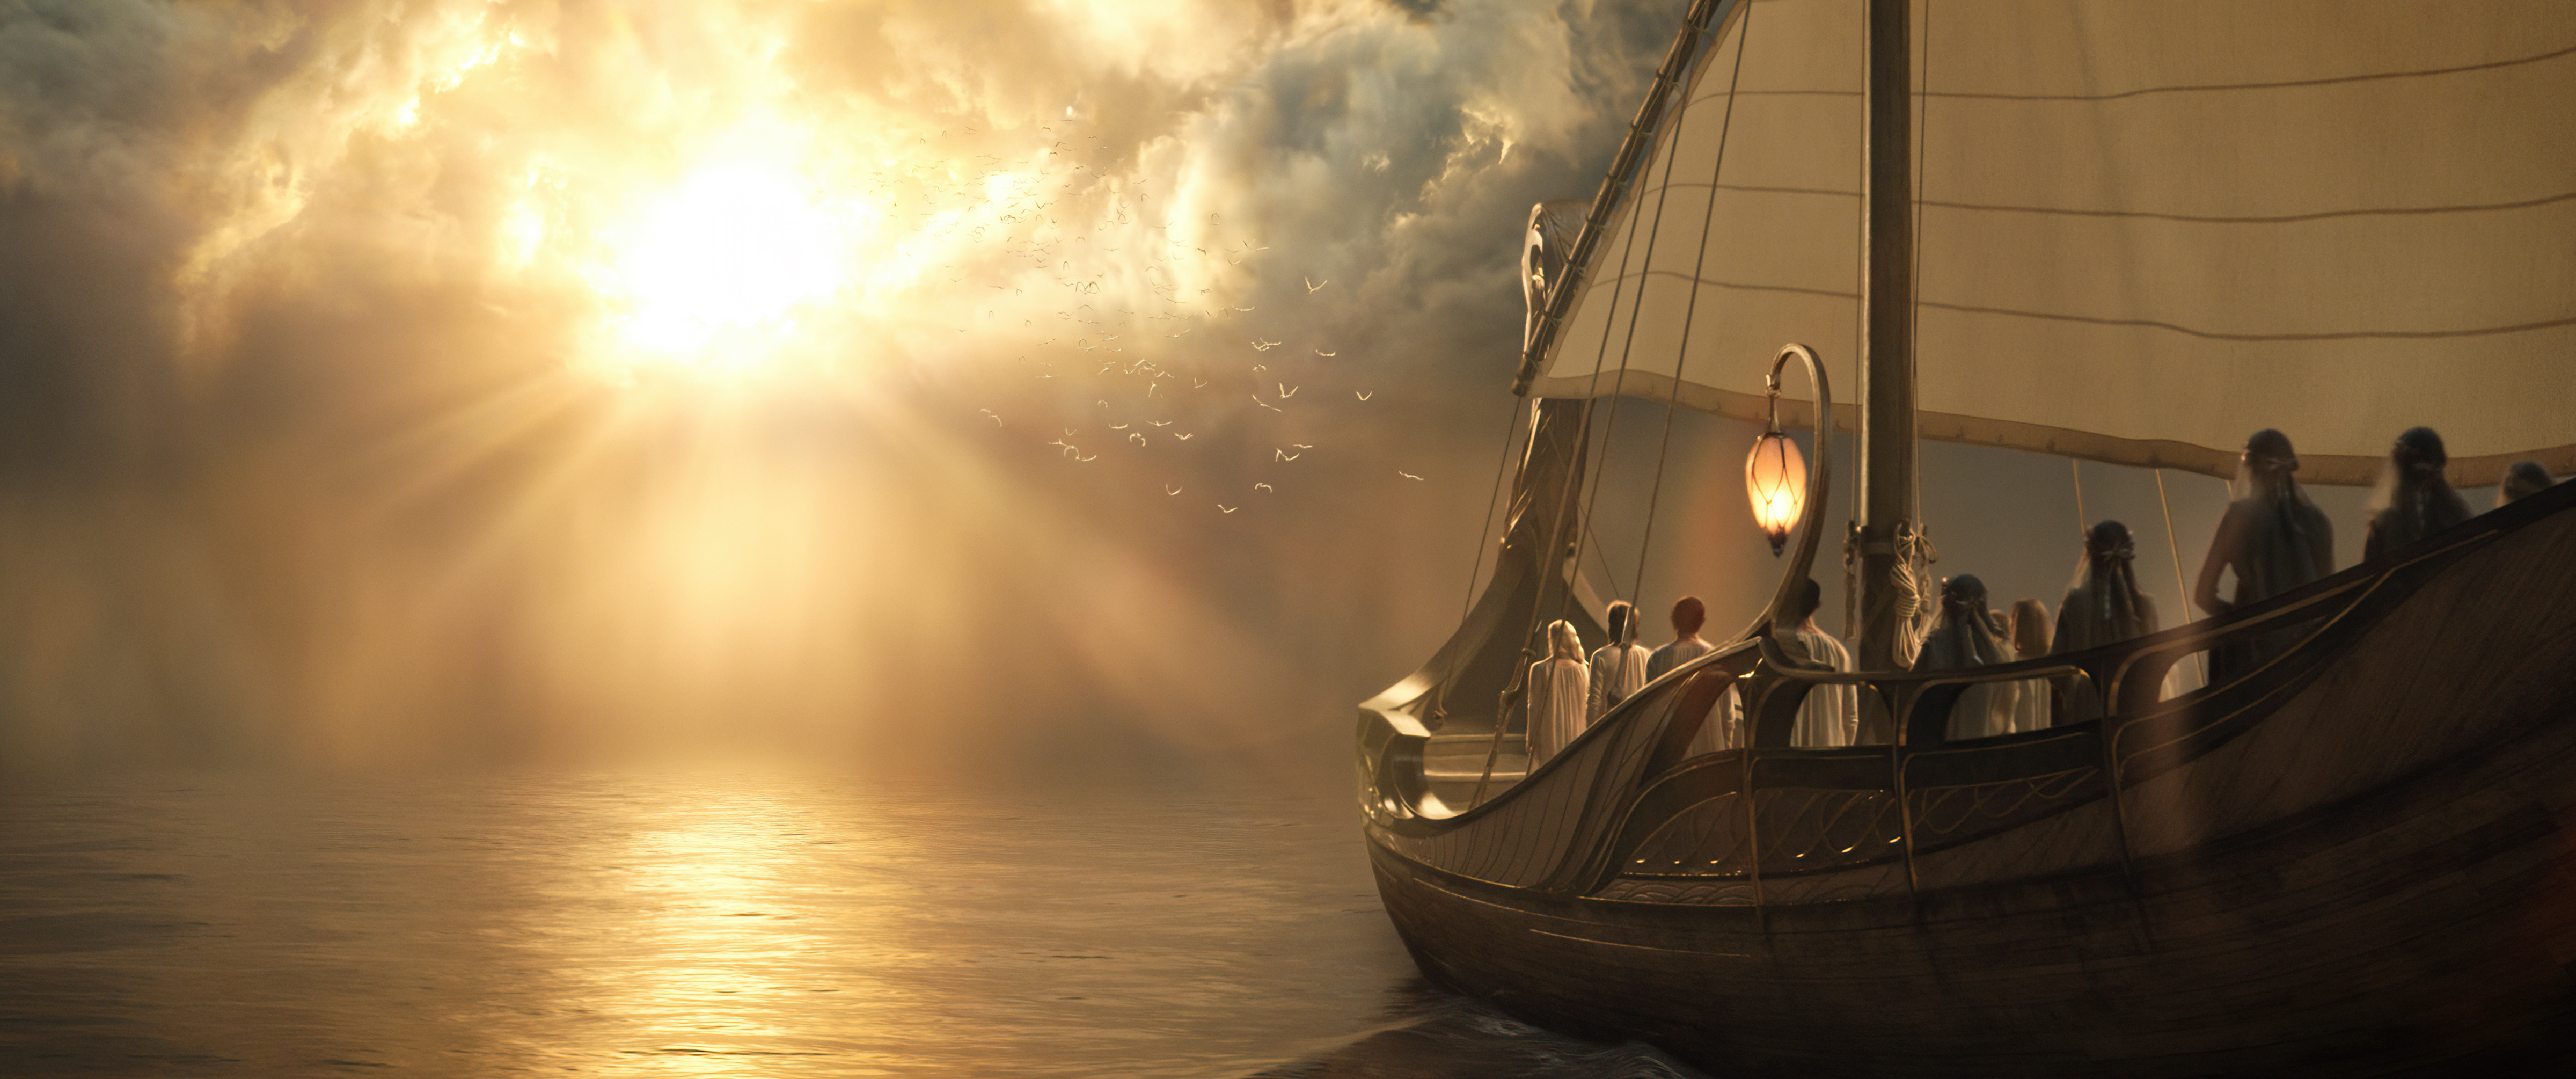 A boat headed towards a sunburst on the tranquil horizon